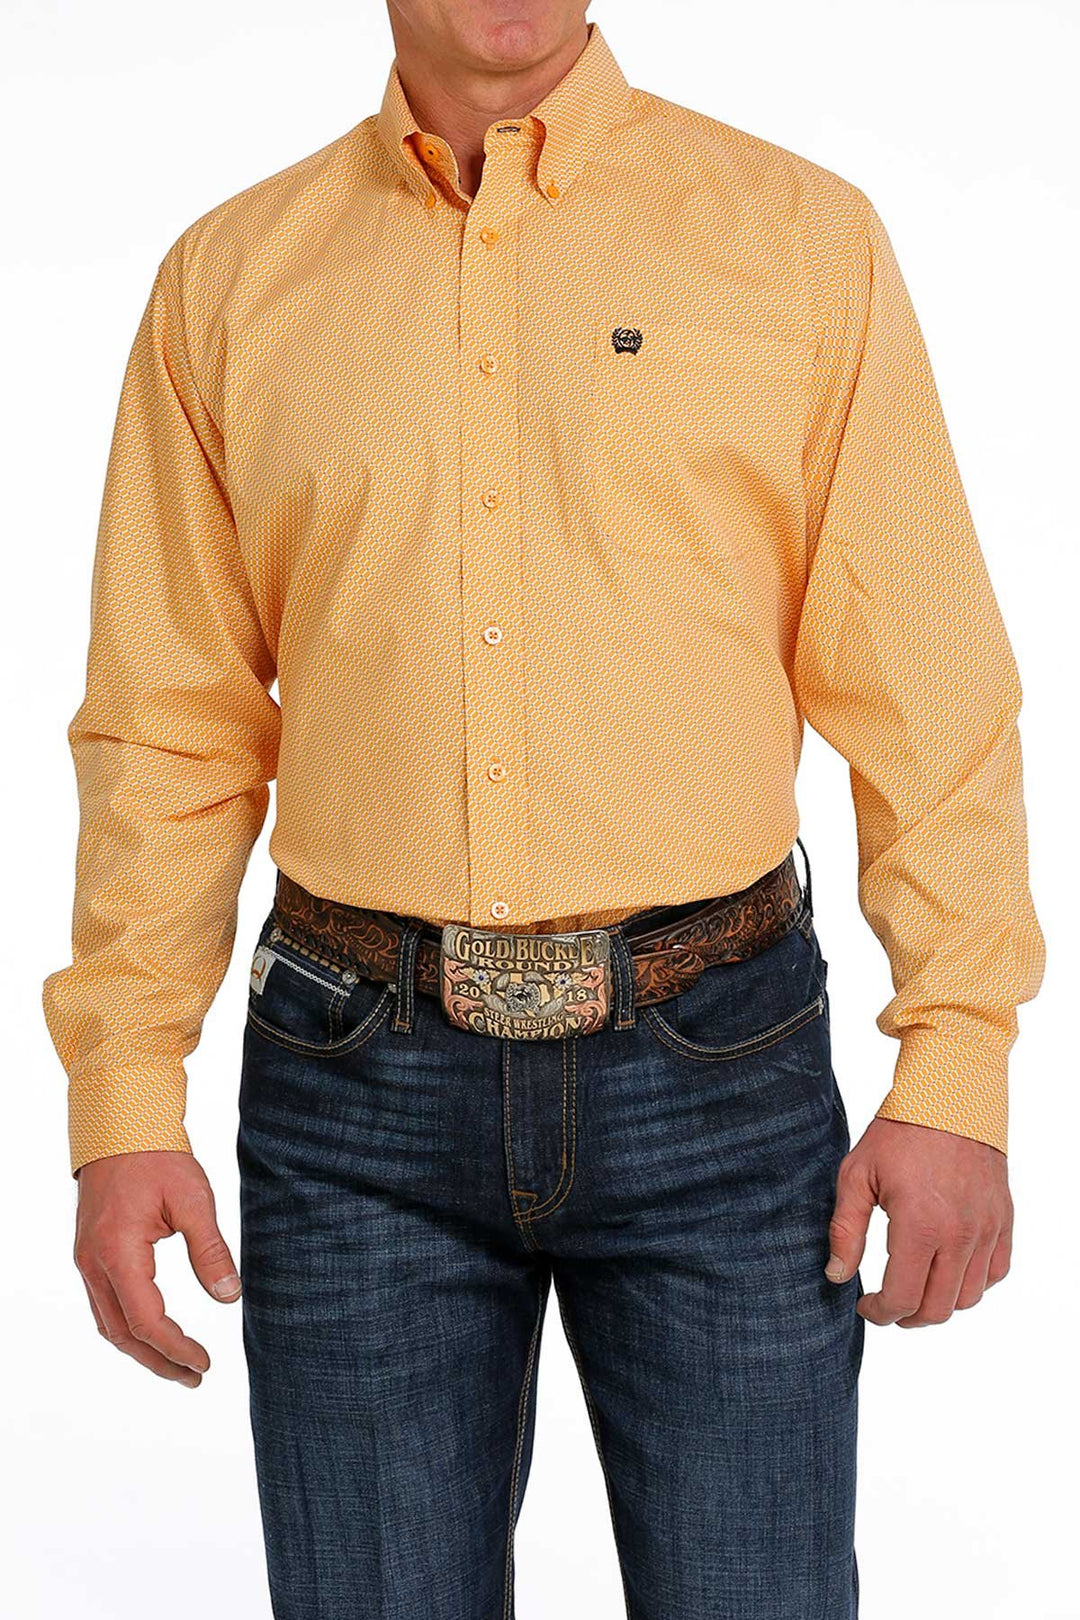 Cinch Men's Mustard Long Sleeve Shirt